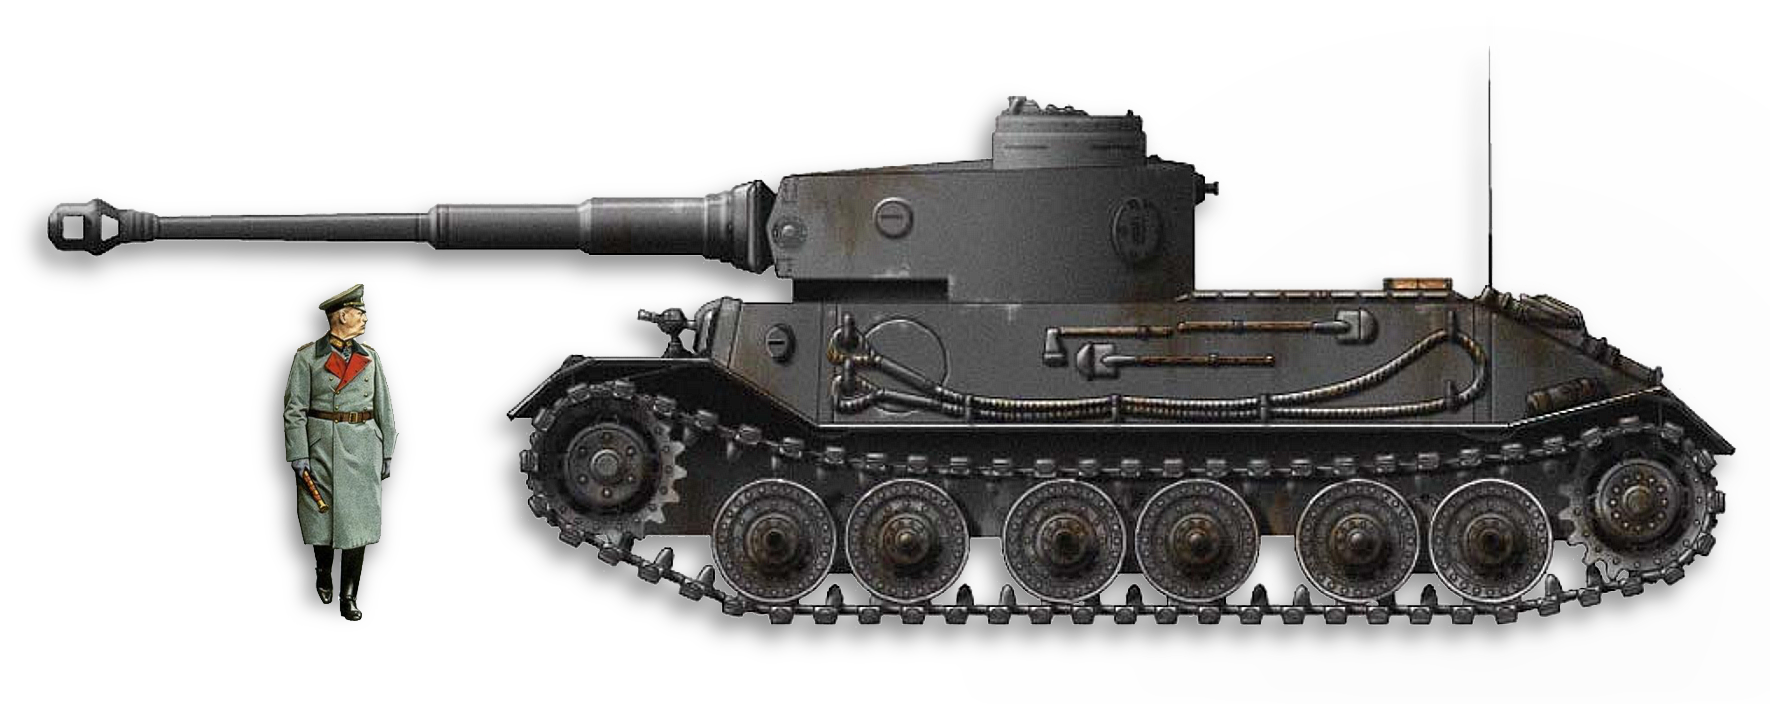 Тигр Порше танк. Танк vk4501 p тигр Порше. Немецкий танк тигр "Порше". Vk4501 h прототип тигра. Танк тигр порше